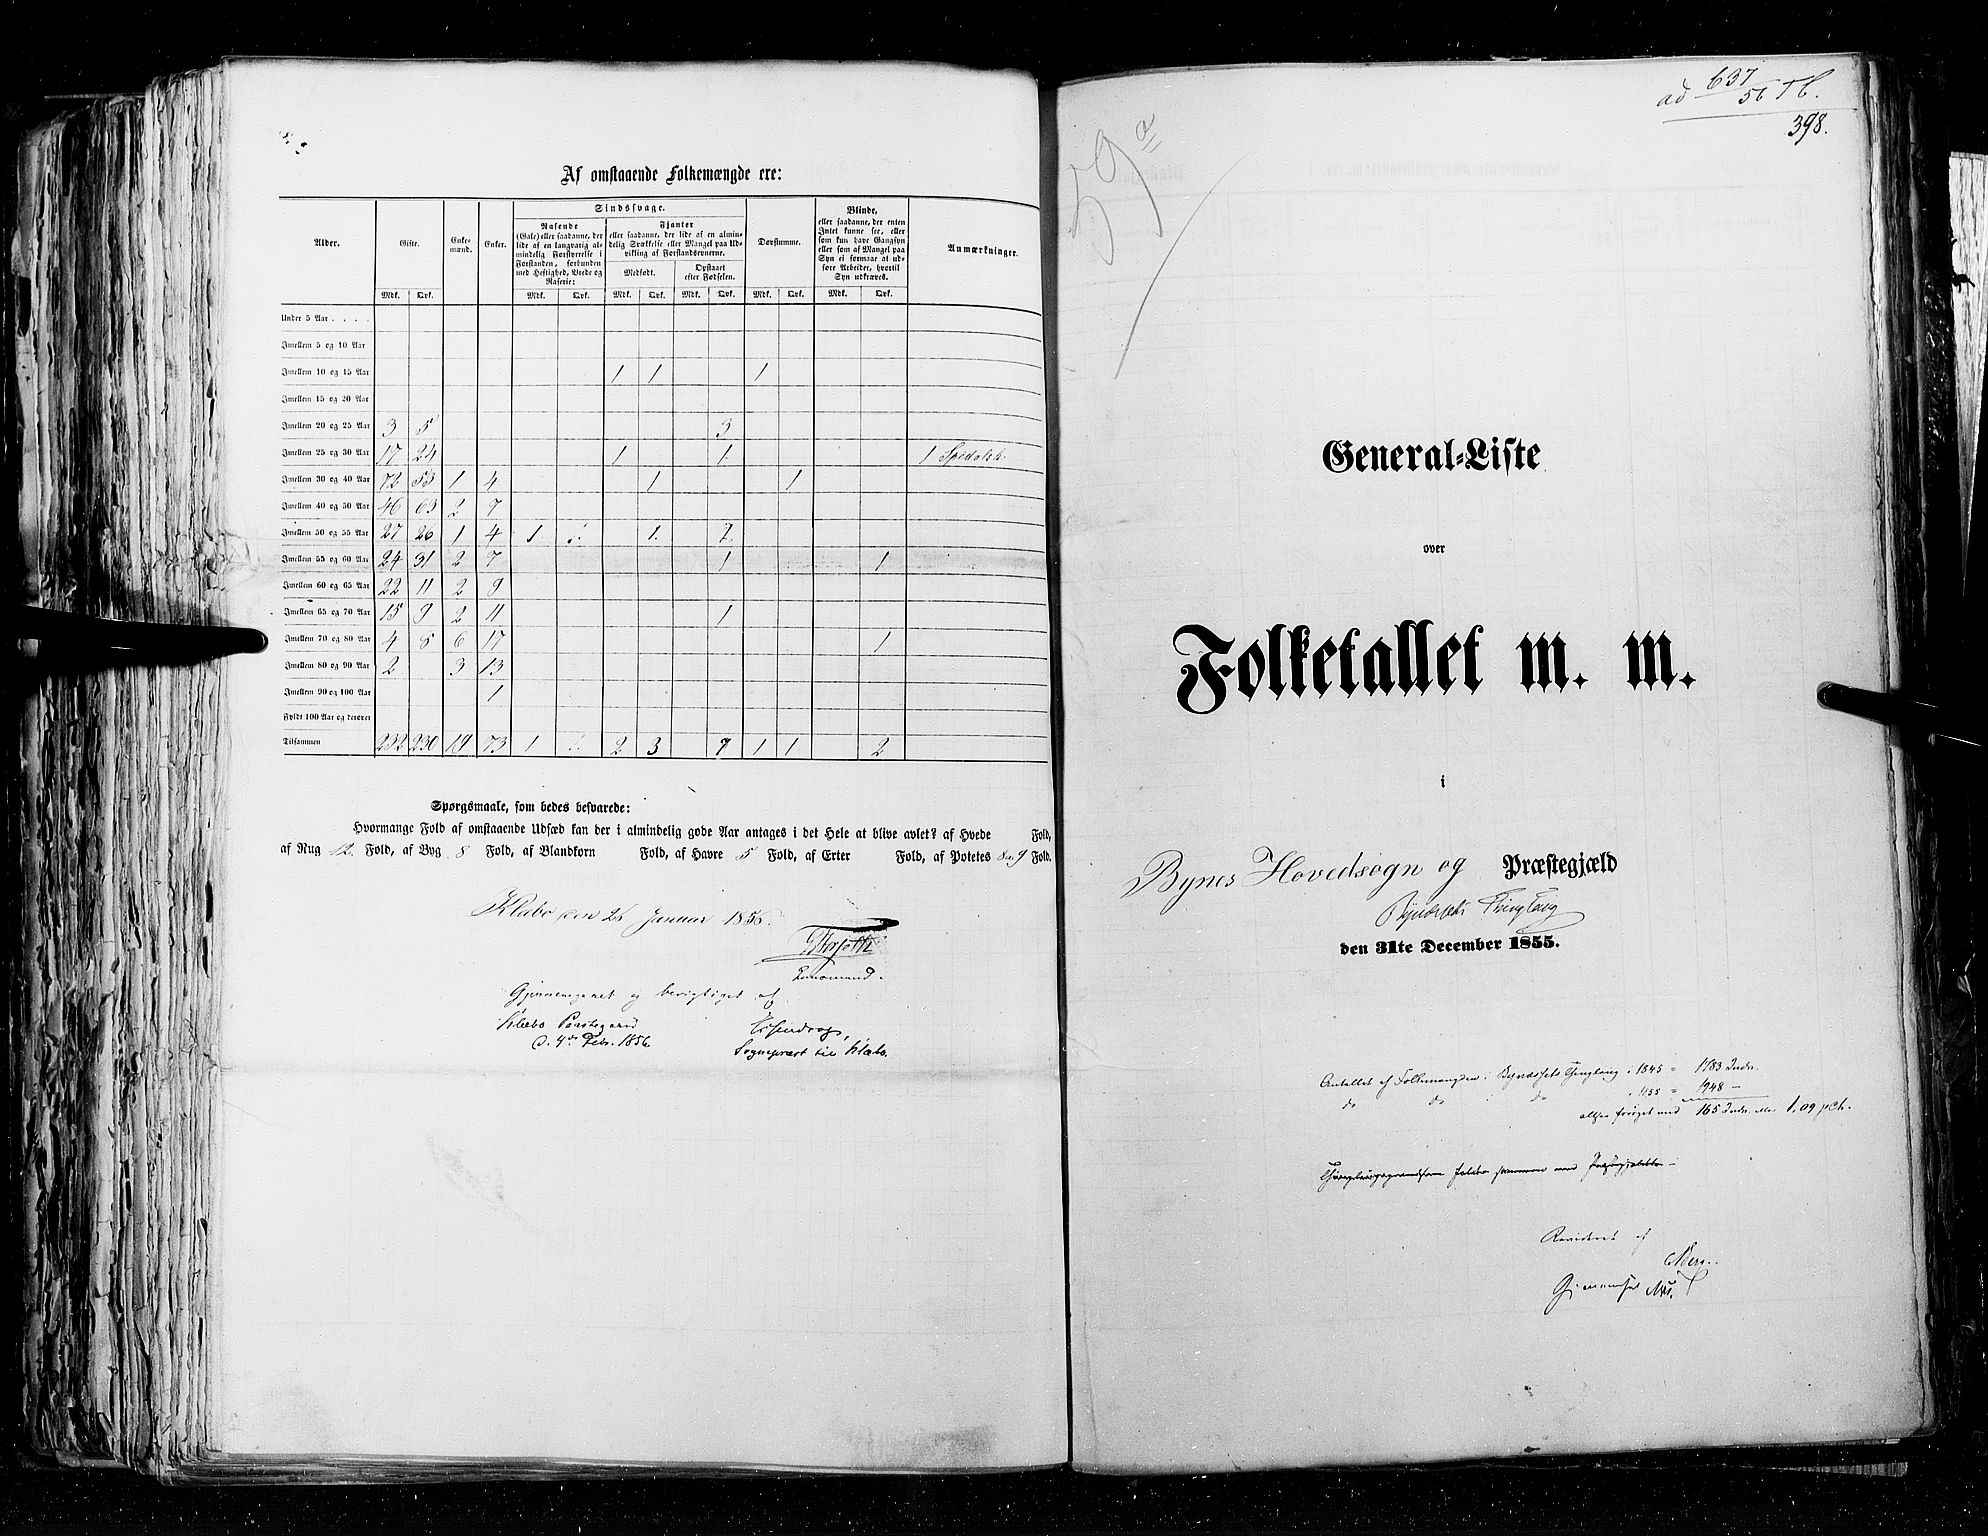 RA, Census 1855, vol. 5: Nordre Bergenhus amt, Romsdal amt og Søndre Trondhjem amt, 1855, p. 398